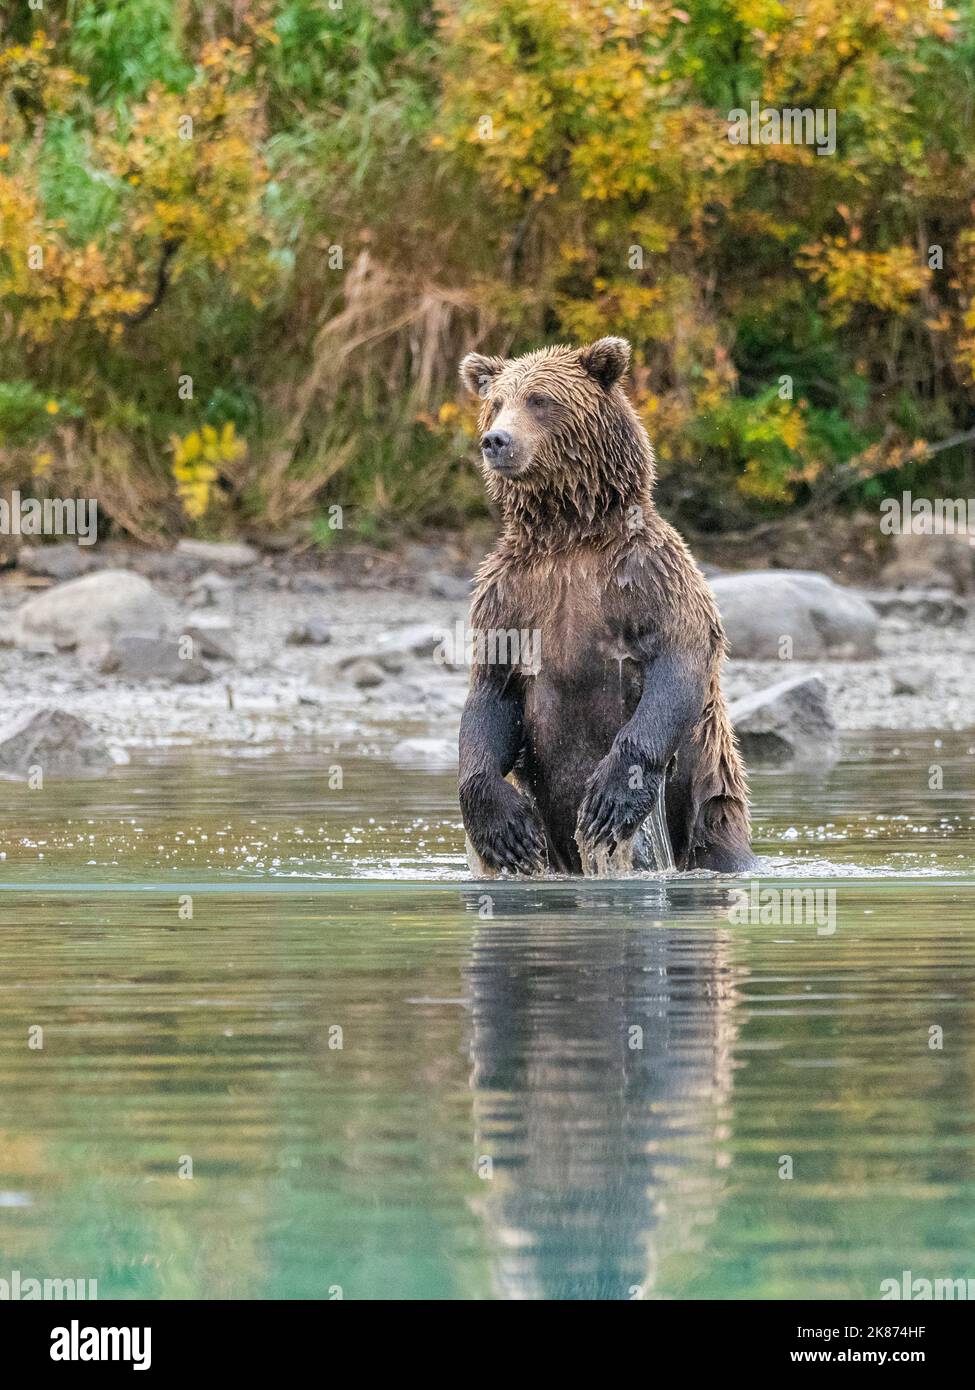 Mère ours brun (Ursus arctos) debout et à la recherche de saumon, parc national et réserve du lac Clark, Alaska, États-Unis d'Amérique Banque D'Images